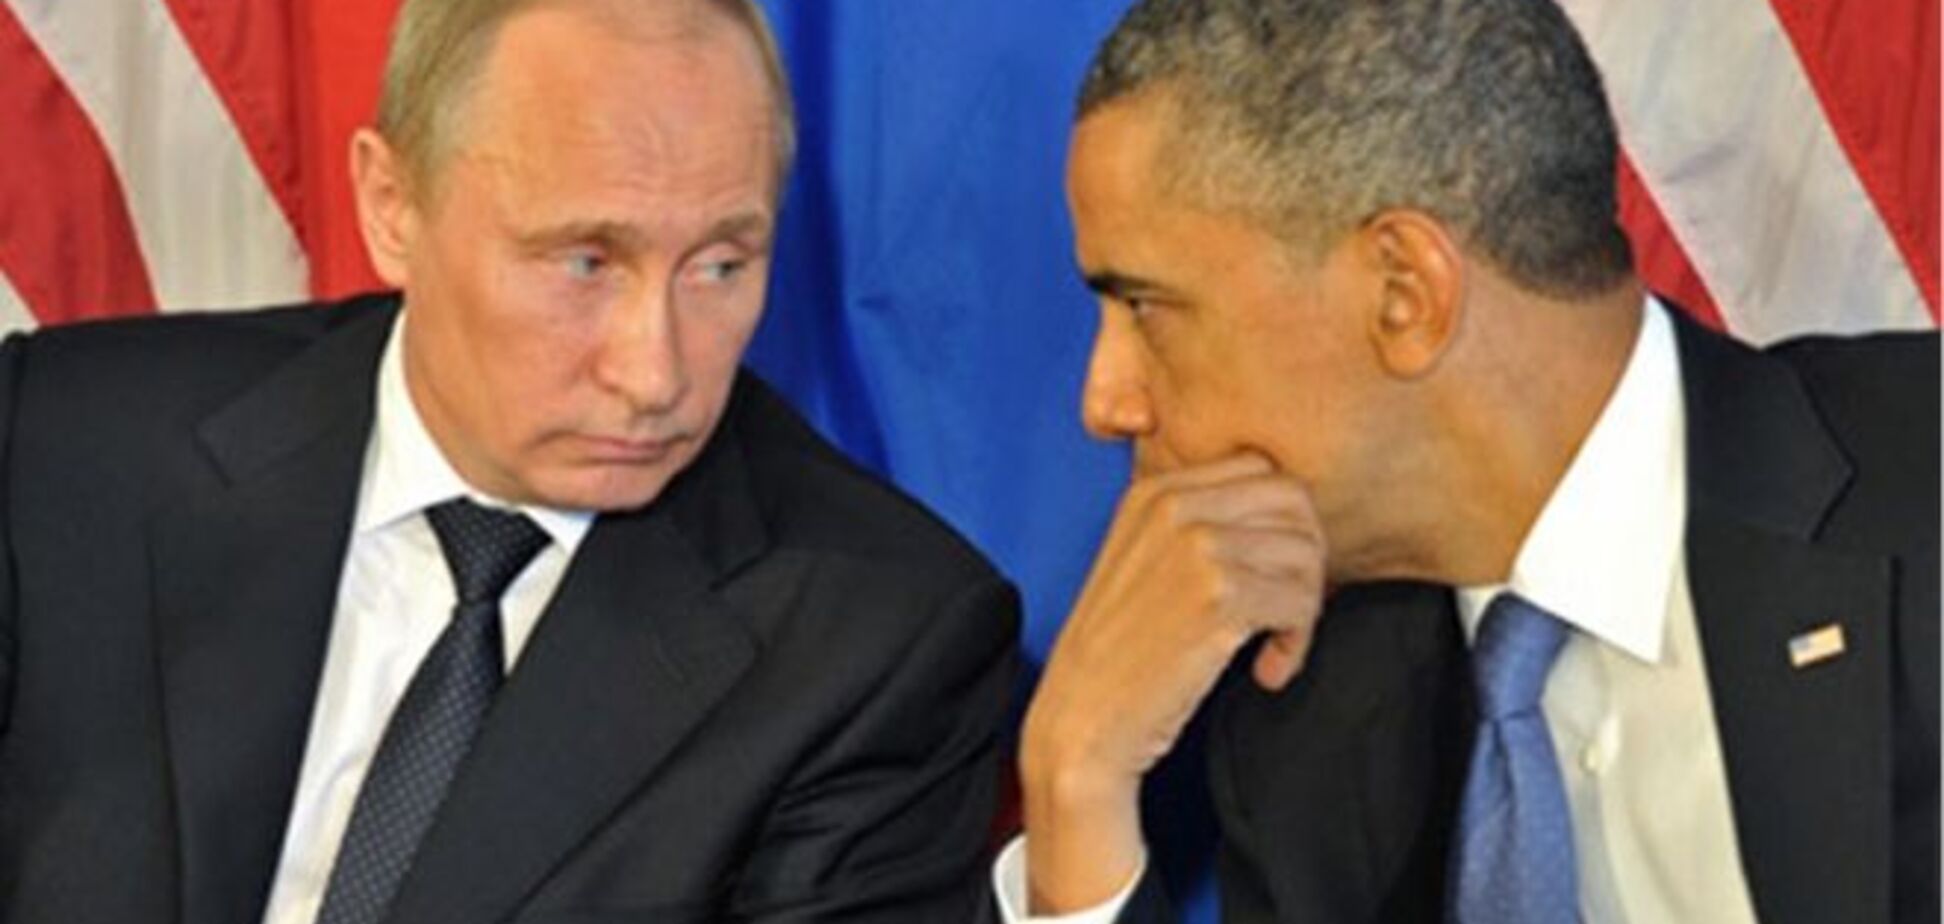 СМИ: Обама готов встретиться с Путиным при наличии повестки дня